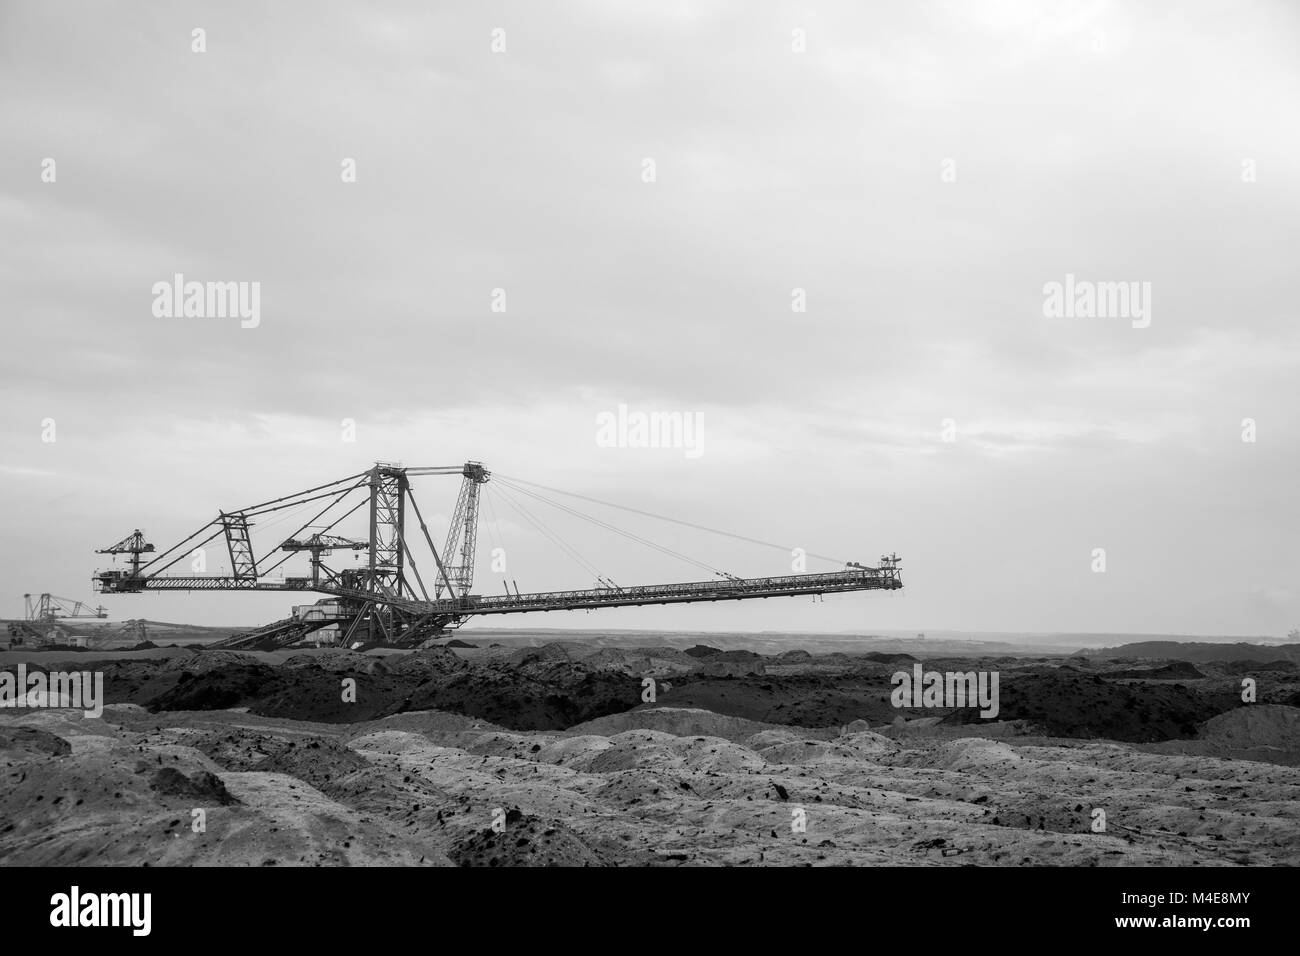 L'extraction de lignite en Allemagne de l'Est Banque D'Images